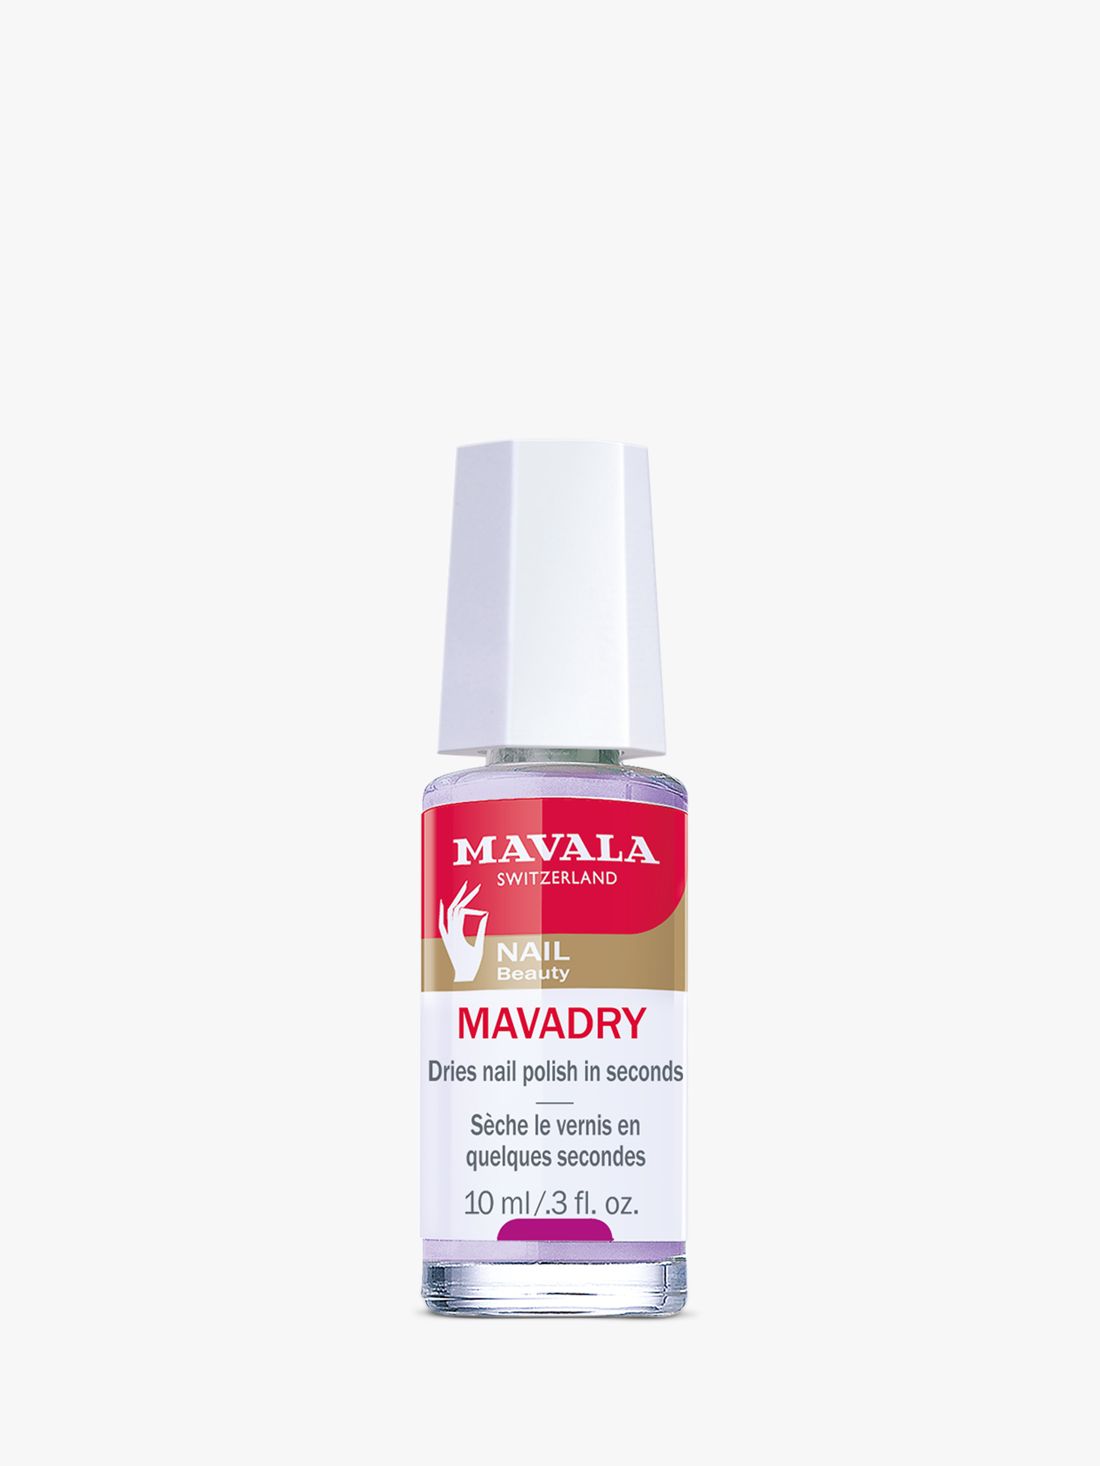 Mavala Mavadry Fast Drying Nail Polish Finish, 10ml 2